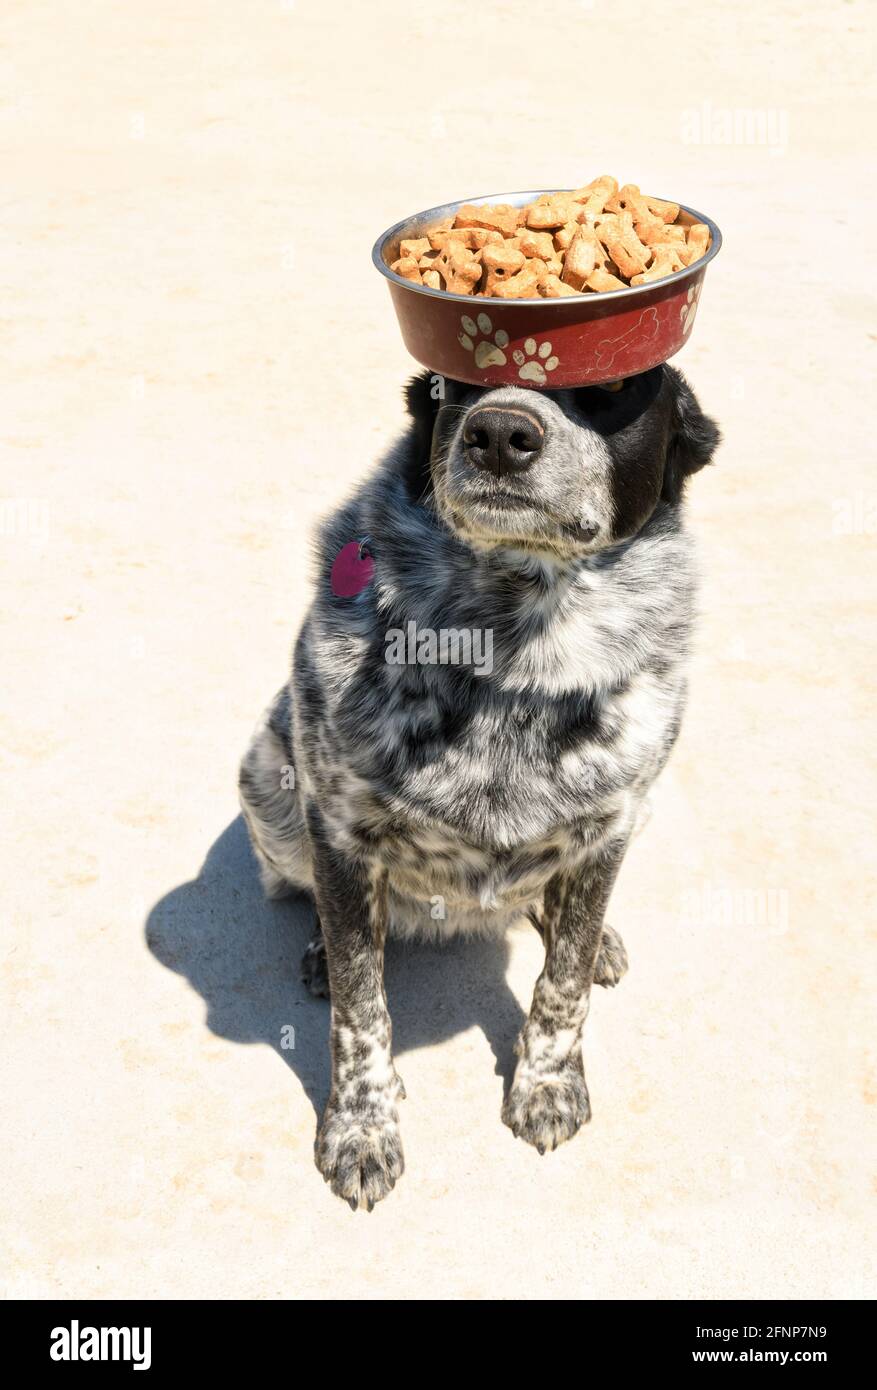 Chien à pois noir et blanc équilibrant un bol rempli de biscuits pour chien sur sa tête et son nez; un acte d'équilibre et d'obéissance Banque D'Images